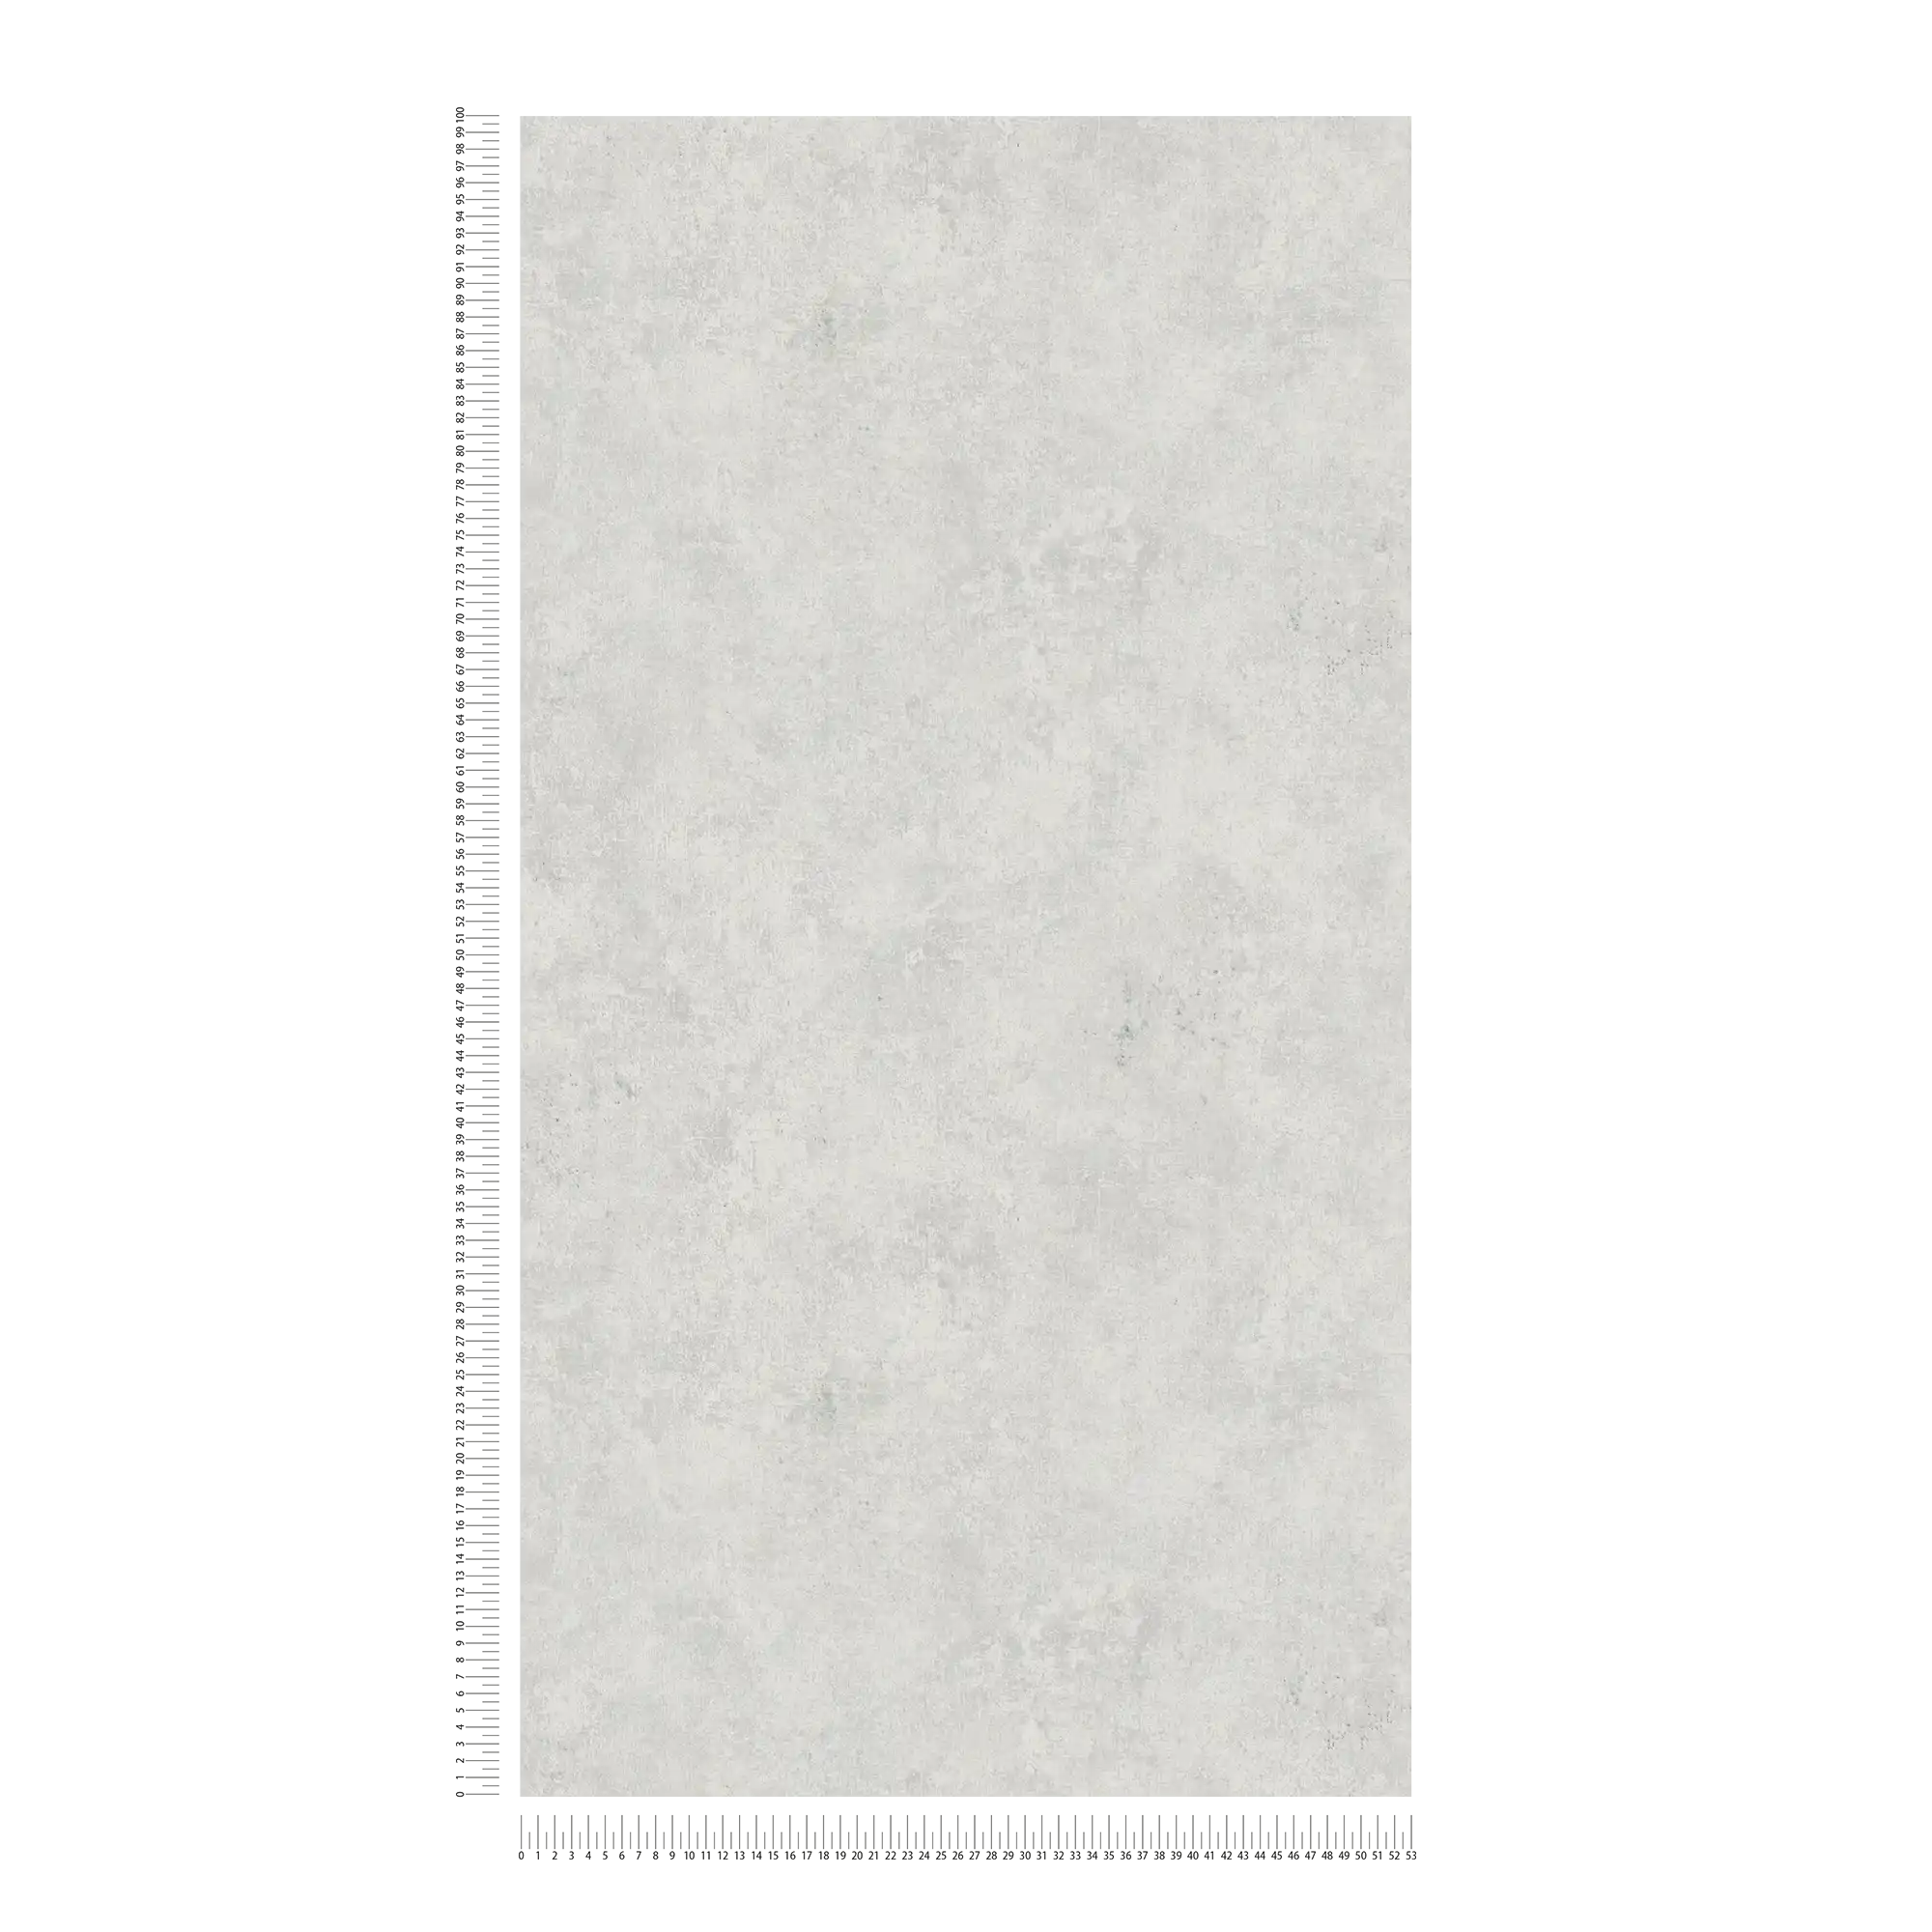             tinta unicadad de papel pintado con aspecto de yeso, aspecto usado y diseño retro - plata
        